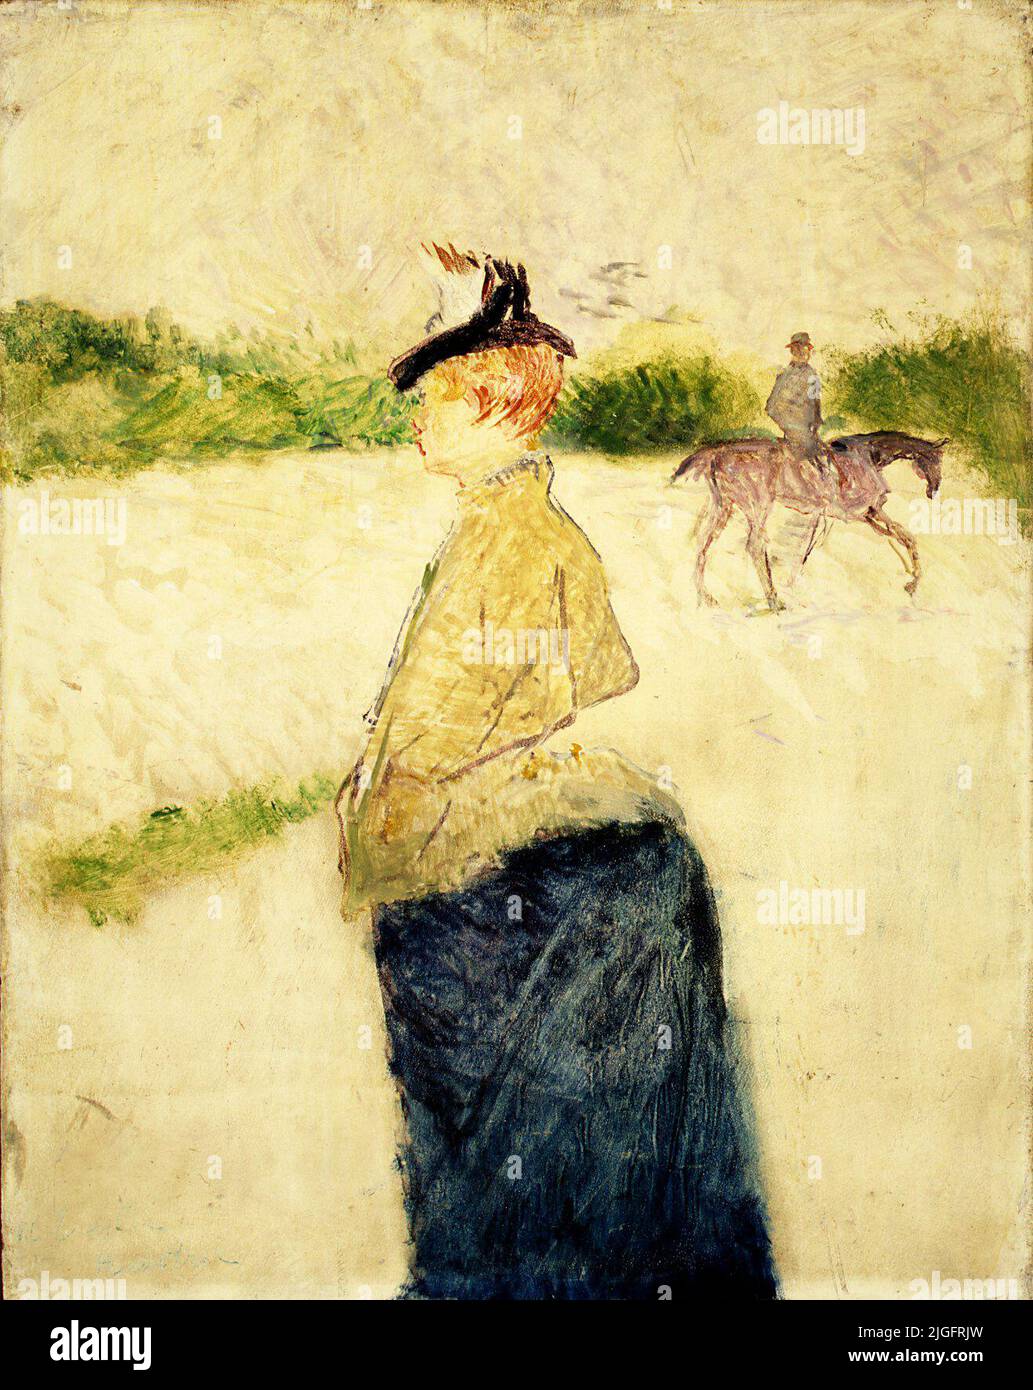 Amilie. Henri de Toulouse-Lautrec. late 1890s. Stock Photo